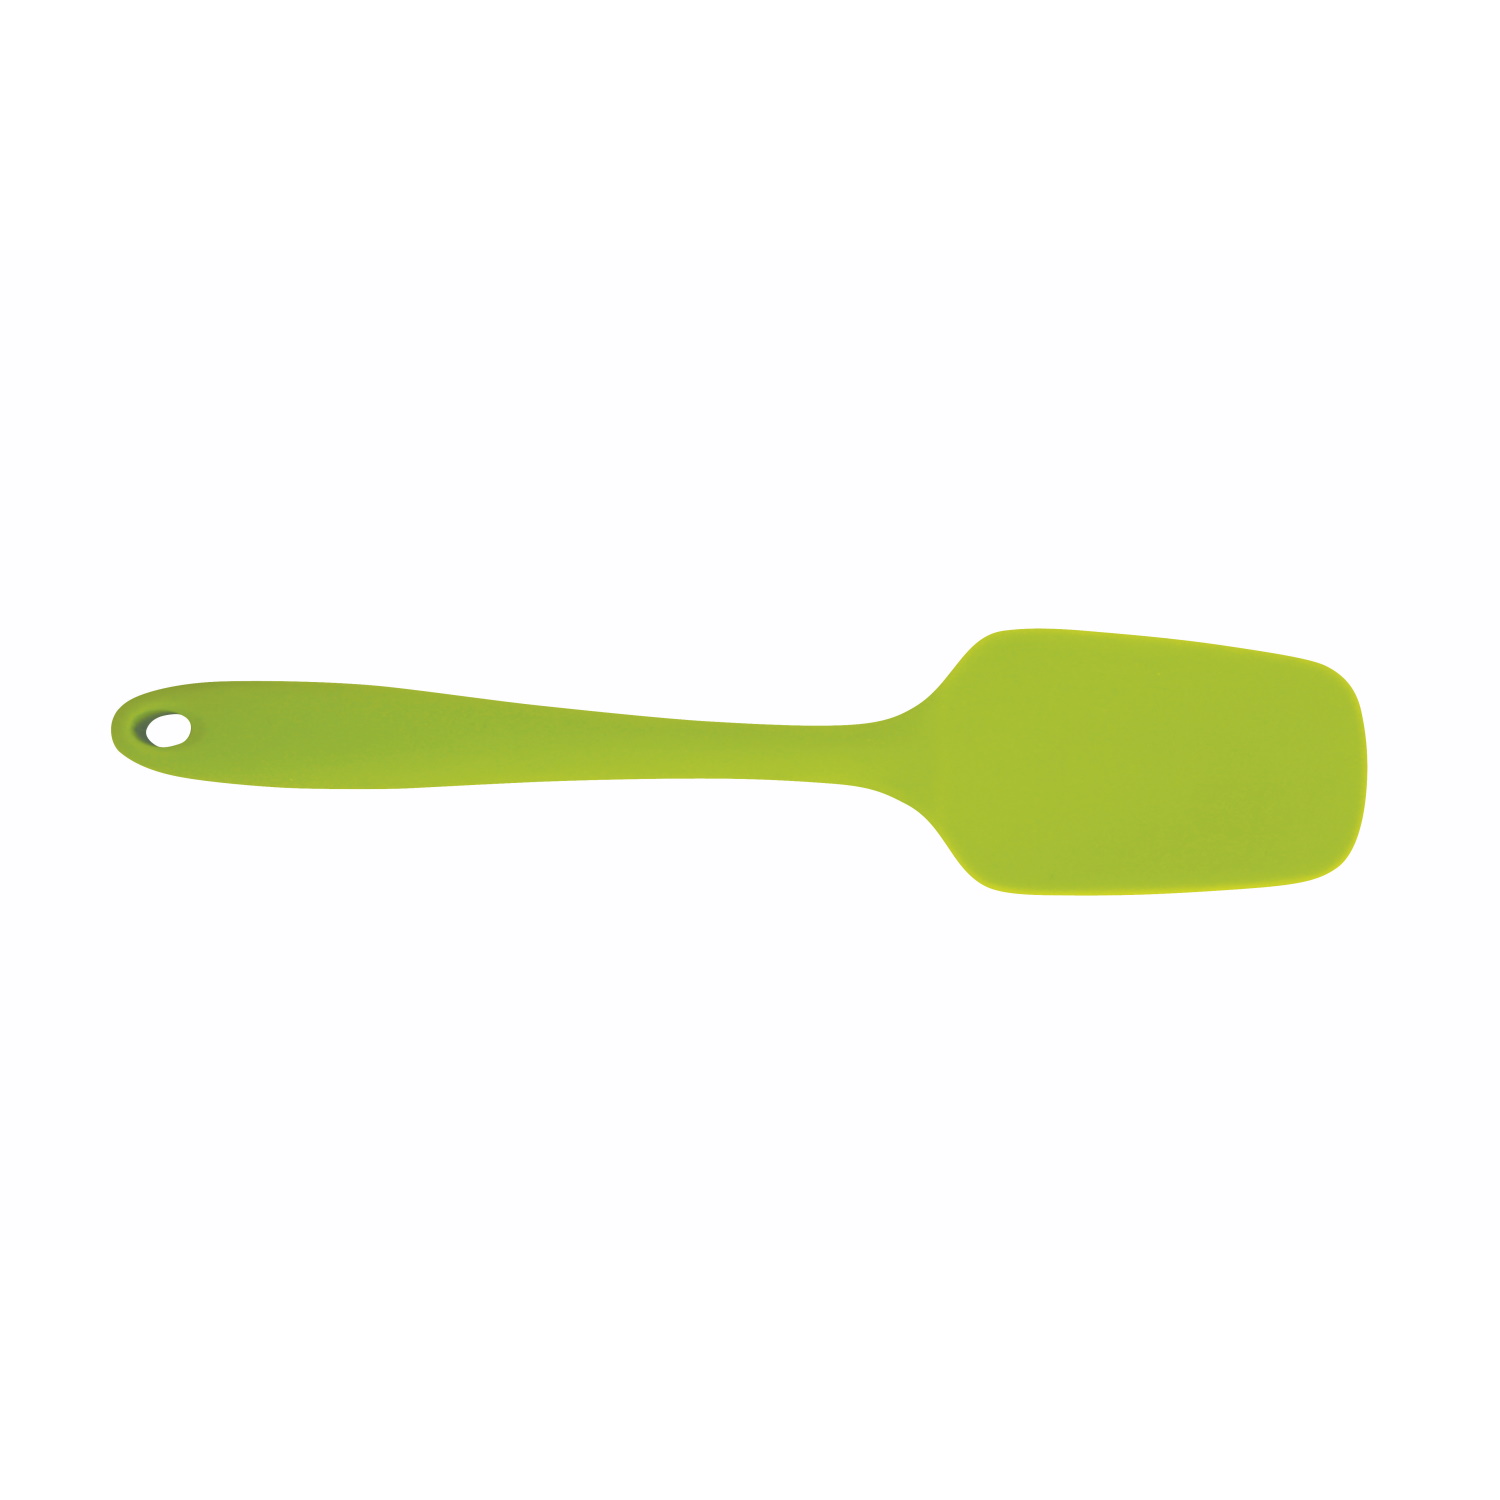 Avanti Silicone Spoon Spatula 28cm - Green